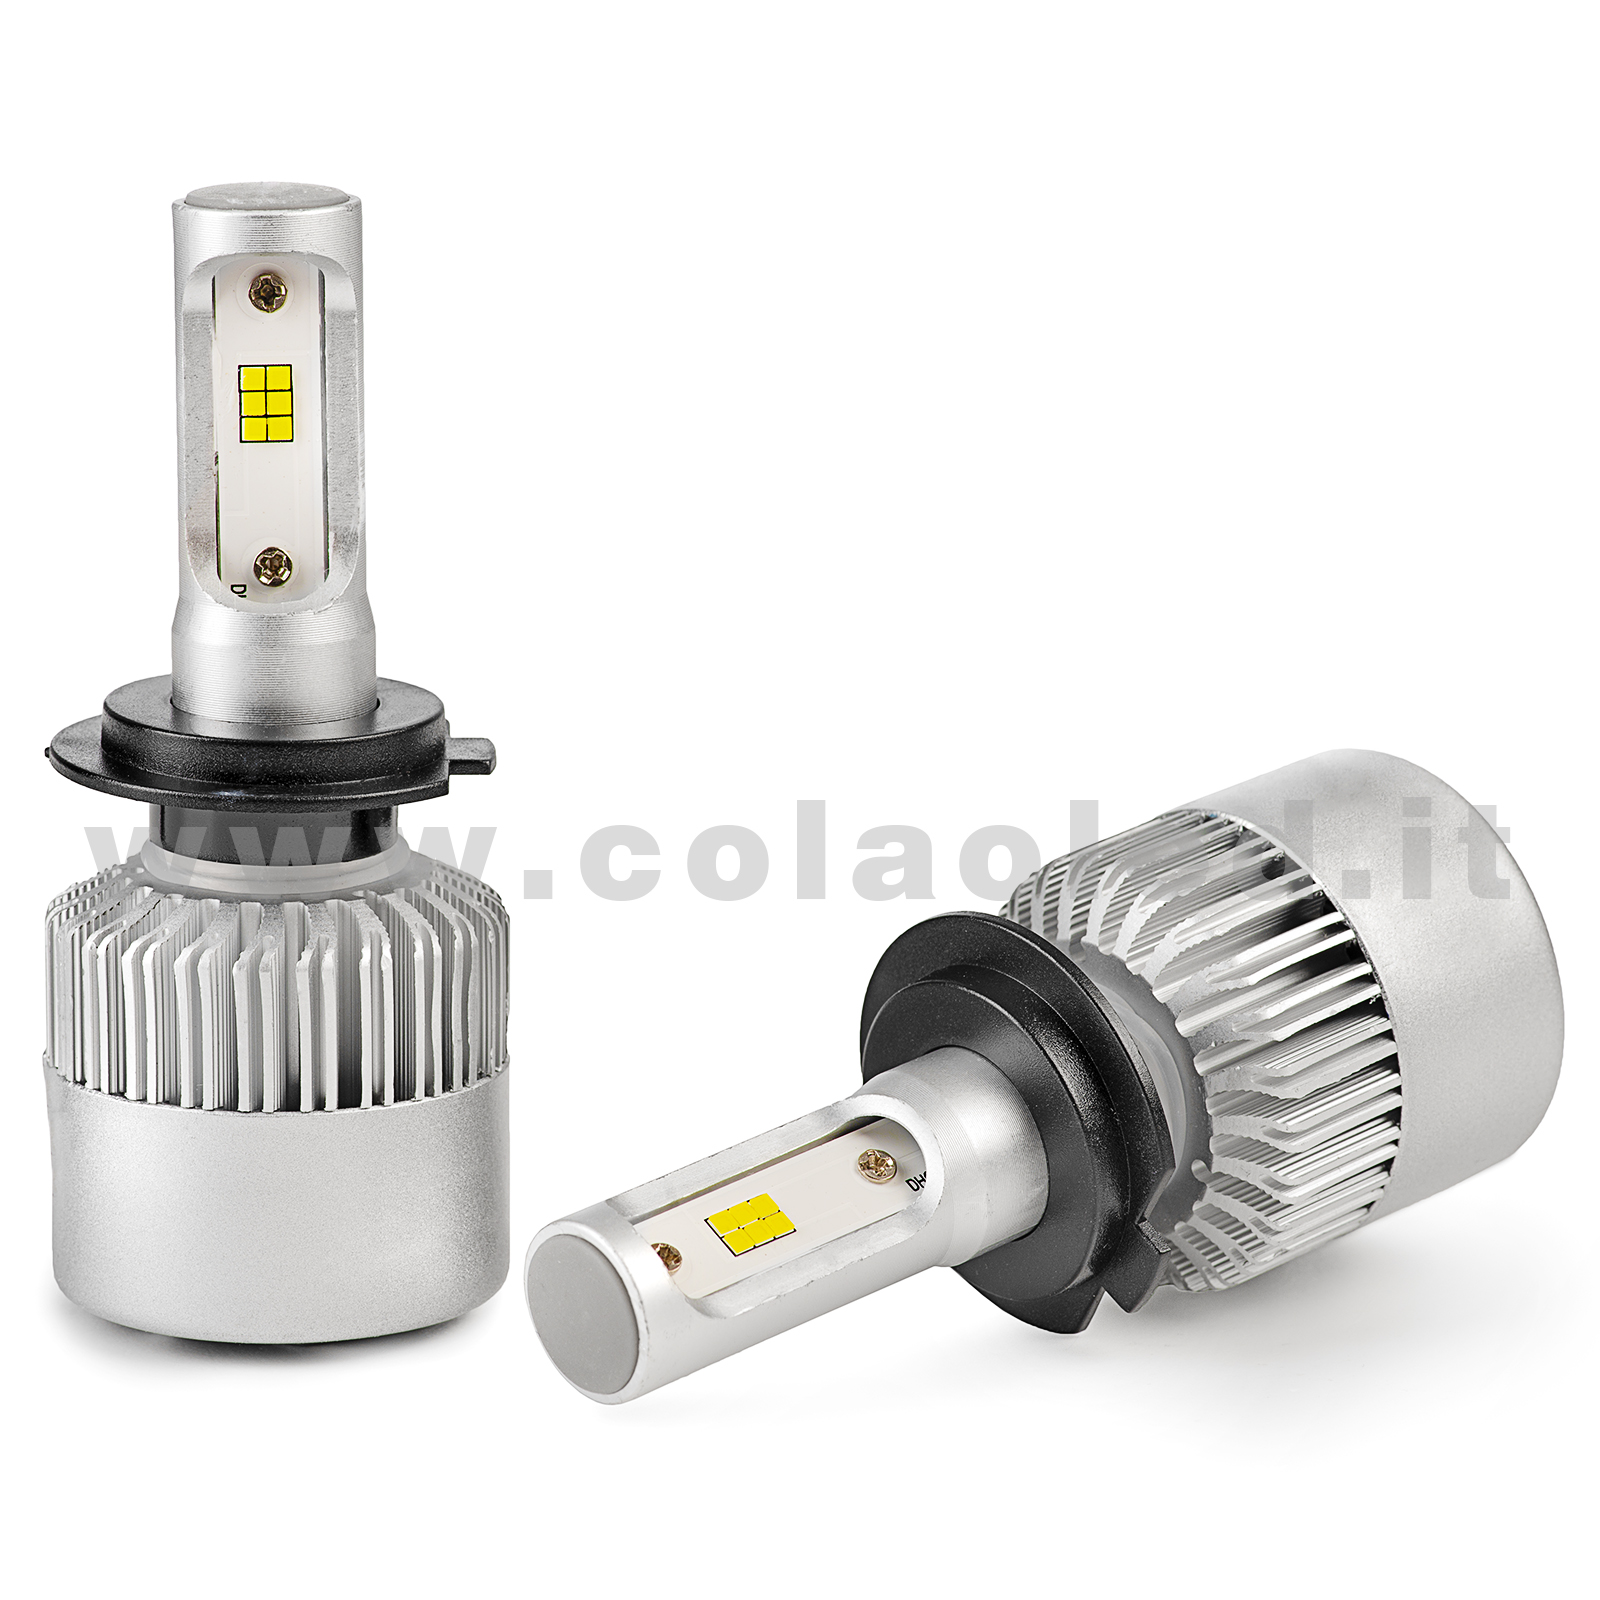 2 pezzi 12V Striscia LED giorno corsa nebbia per auto lampada guida bianco  : fatto di materiale ABS , alta temperatura resistente , a prova di polvere  , 10 LED , durevole